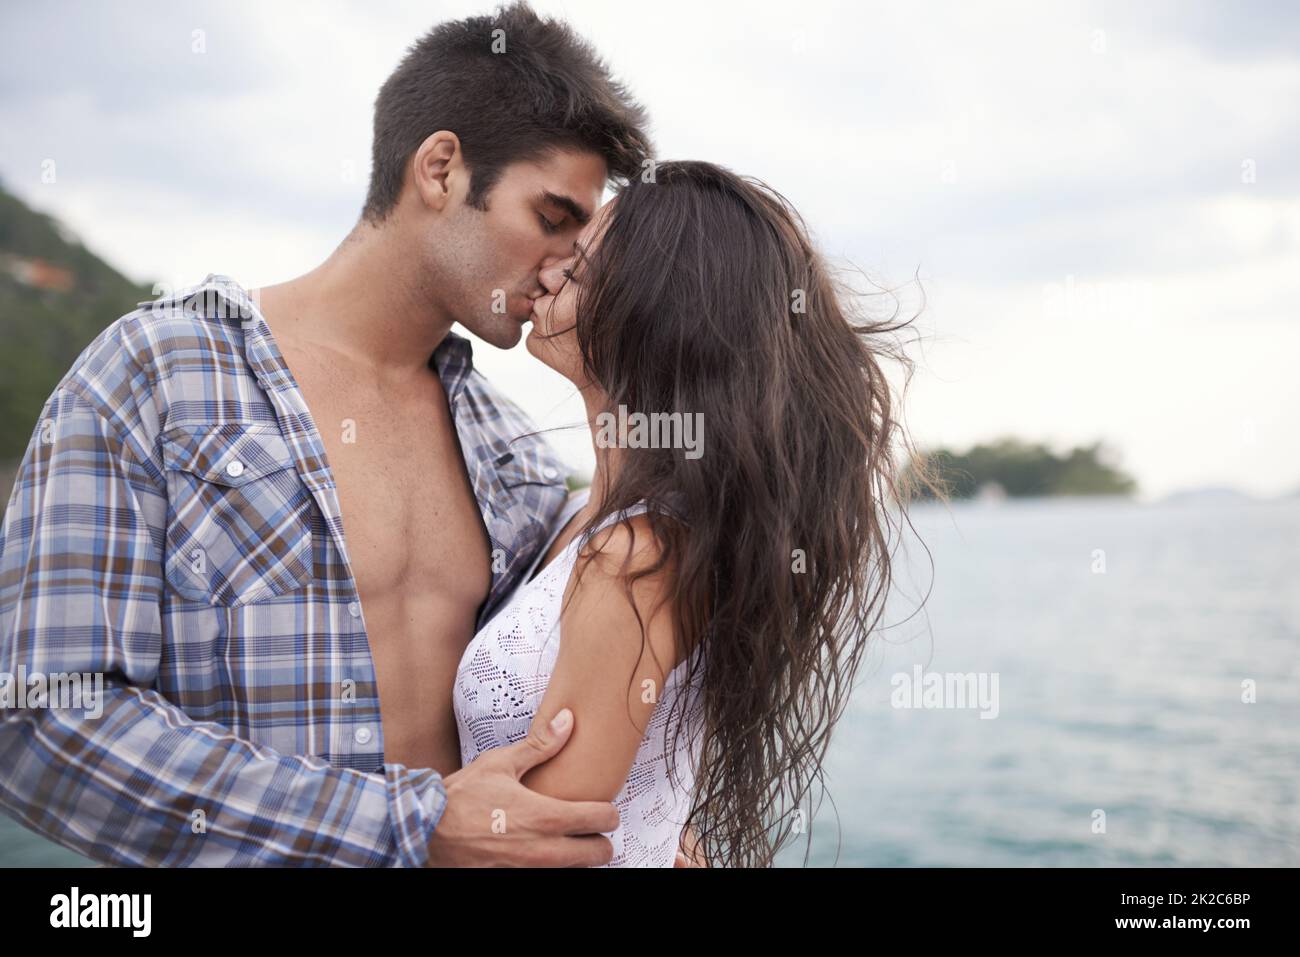 Prendendo il loro amore fuori. Scatto di una giovane coppia intima godendo un bacio vicino al bordo delle acque. Foto Stock